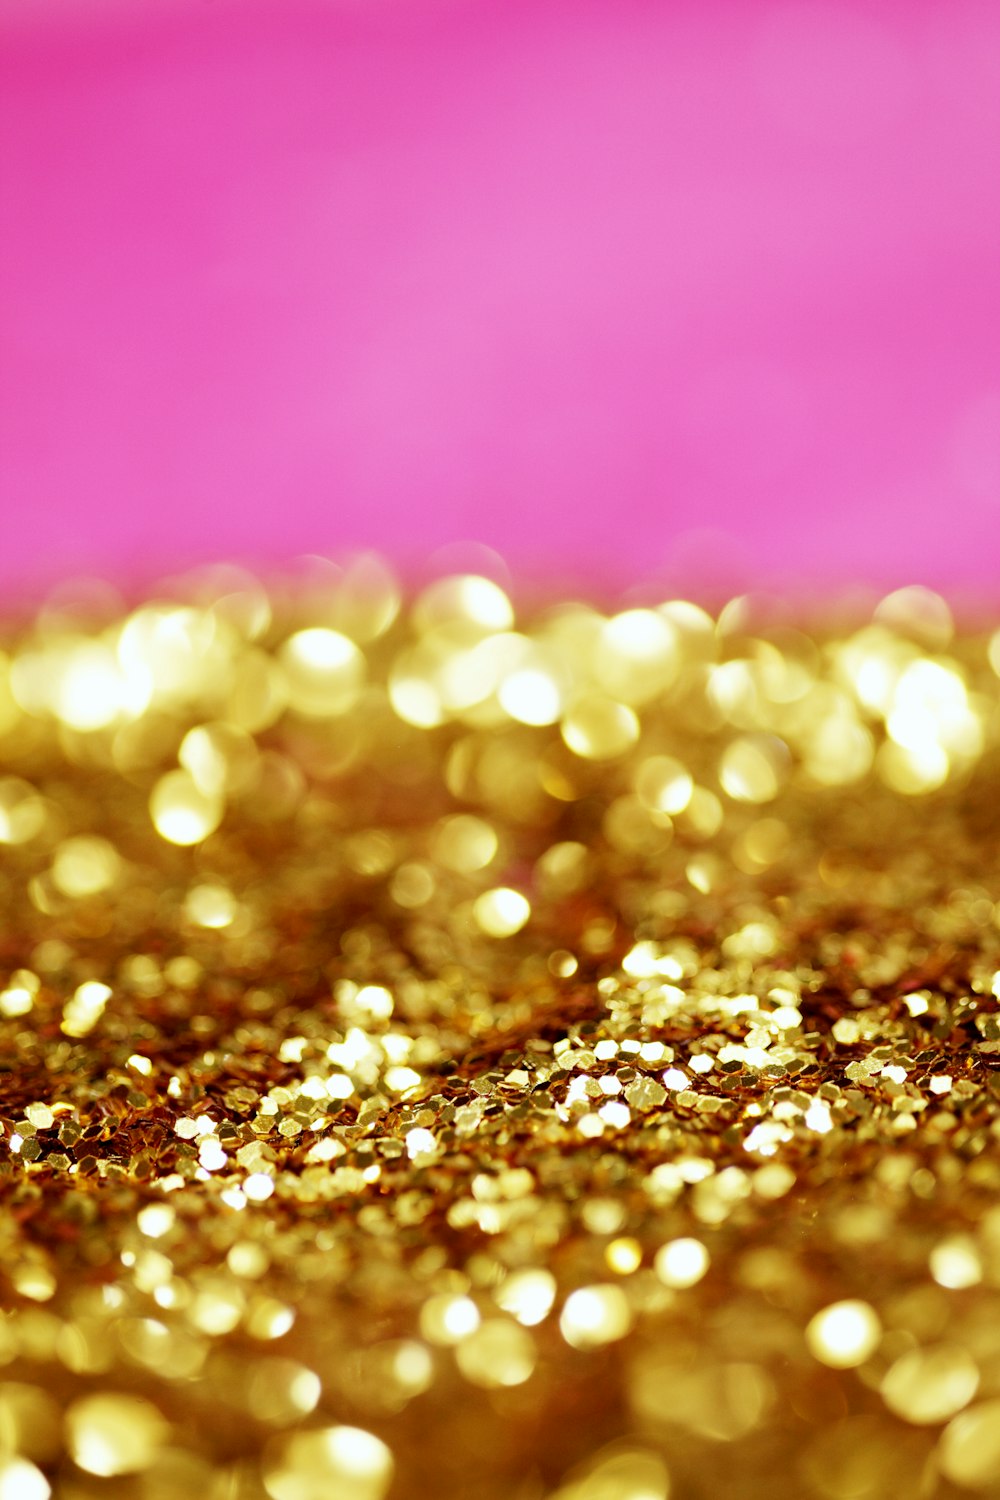 Un fond rose et or avec beaucoup de paillettes dorées